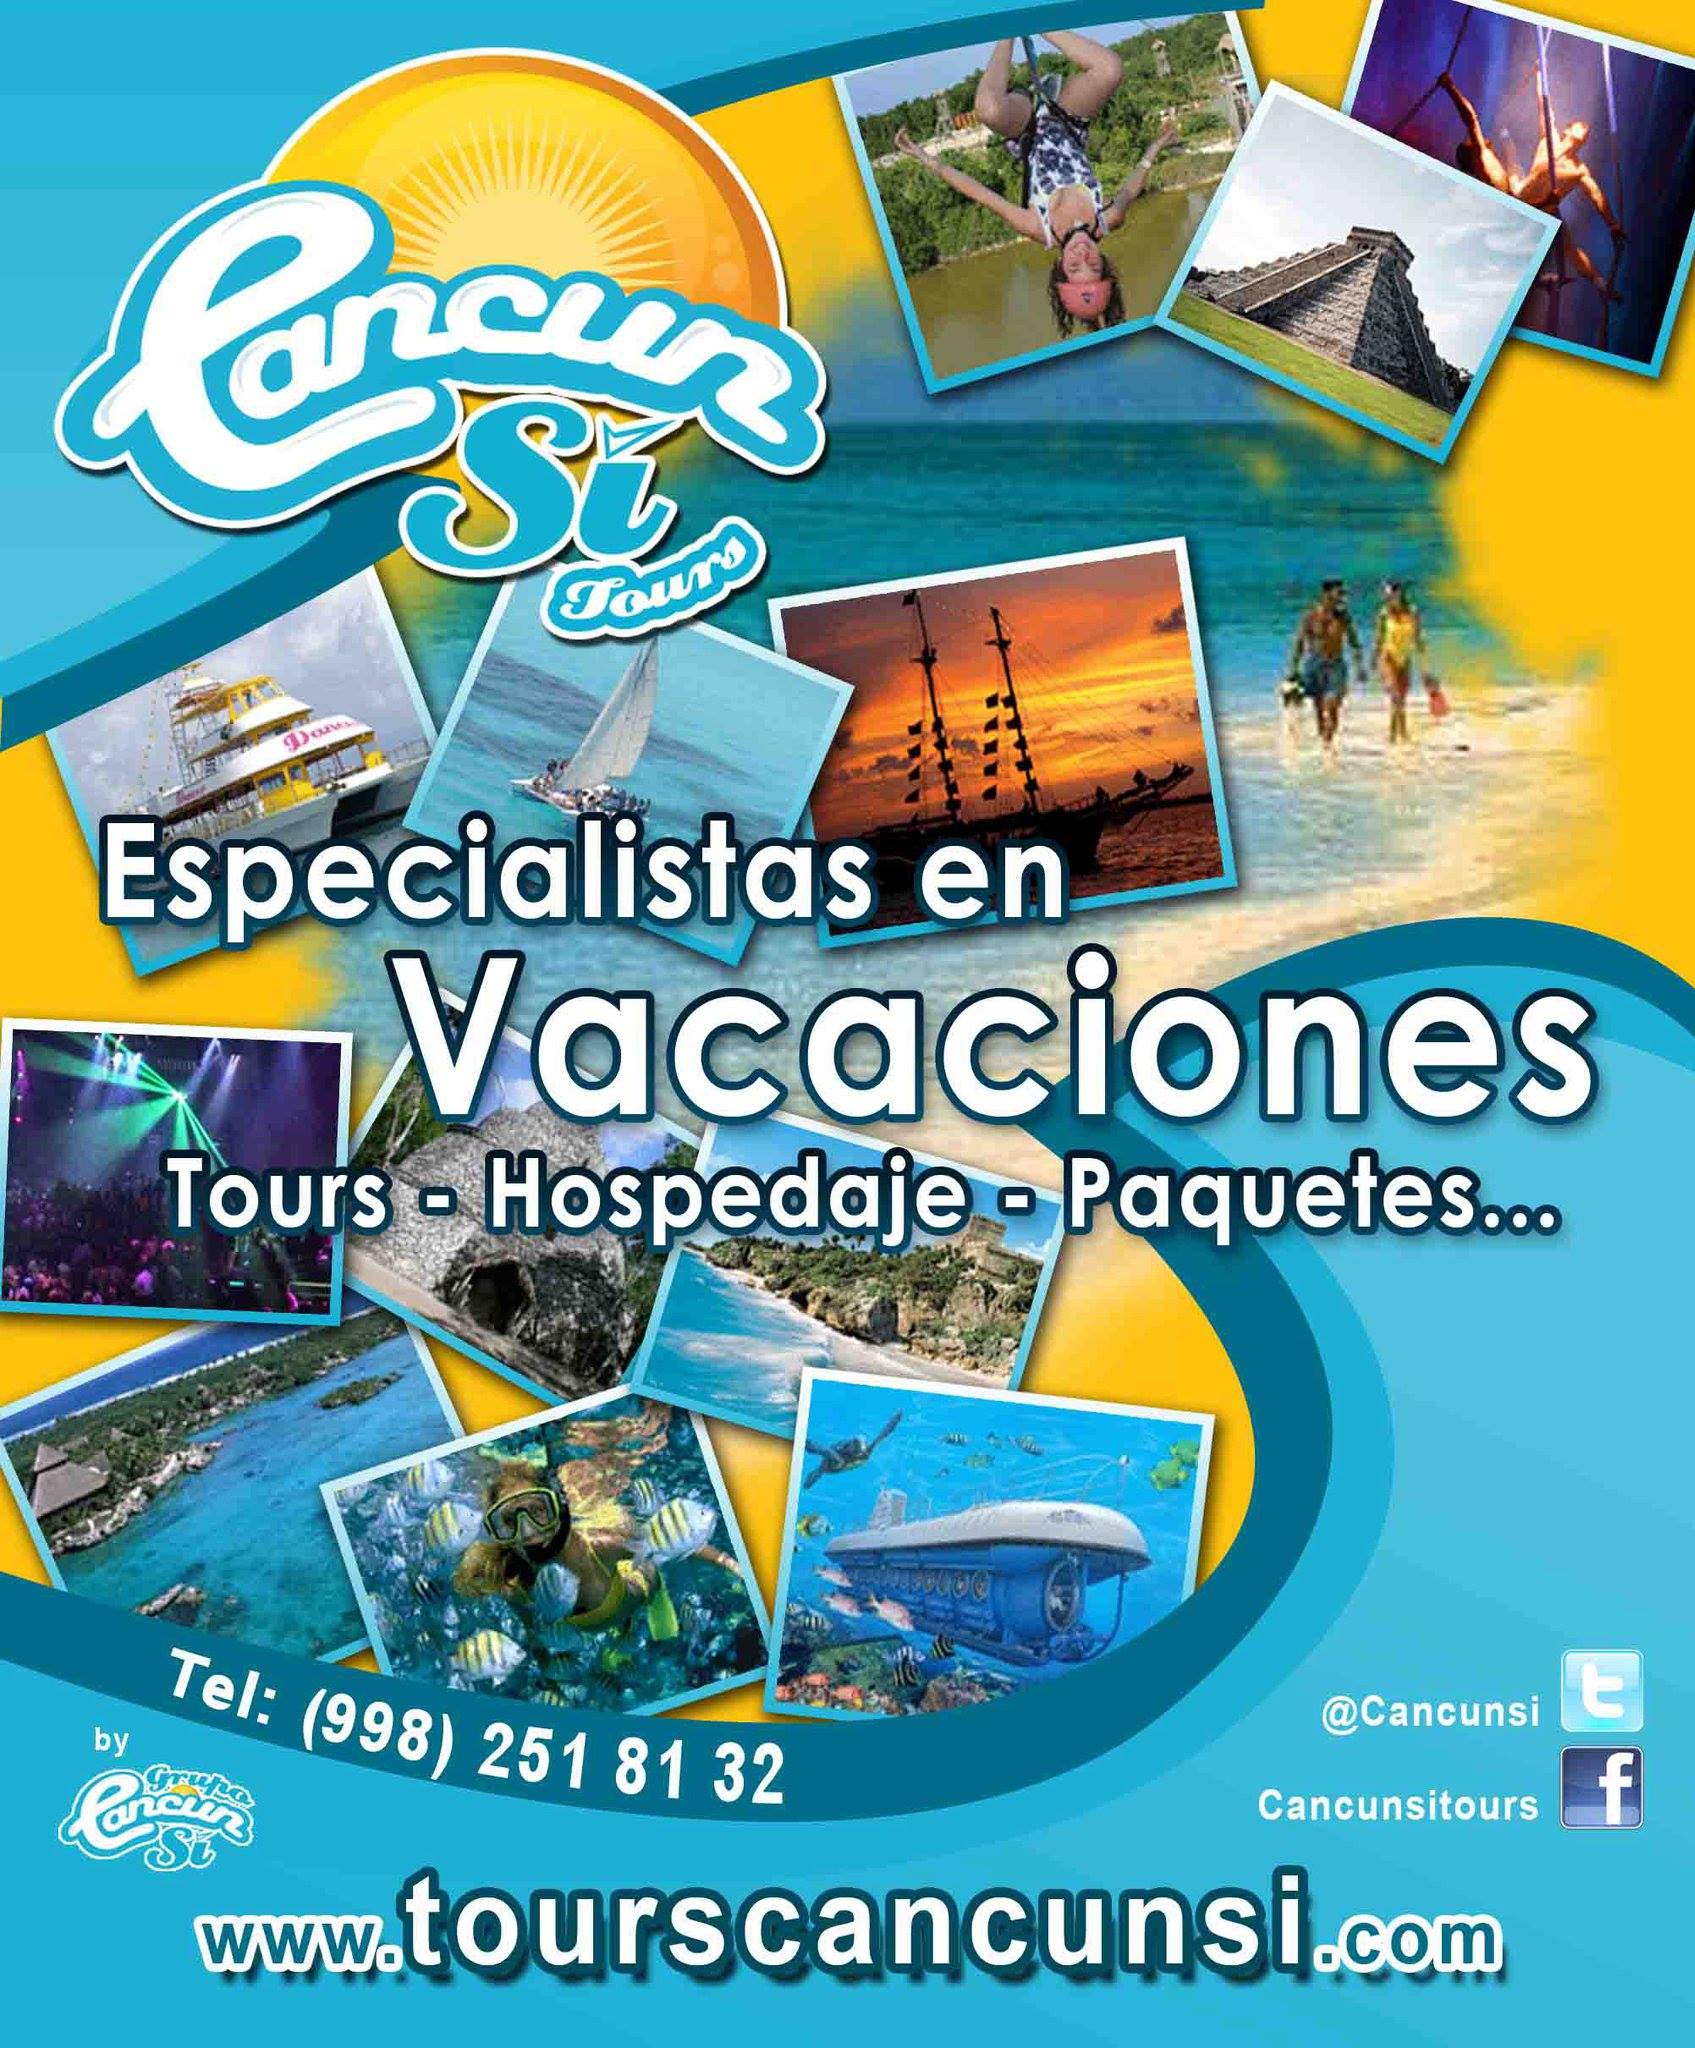 Cancún Si Tours / Imagen del perfil FB